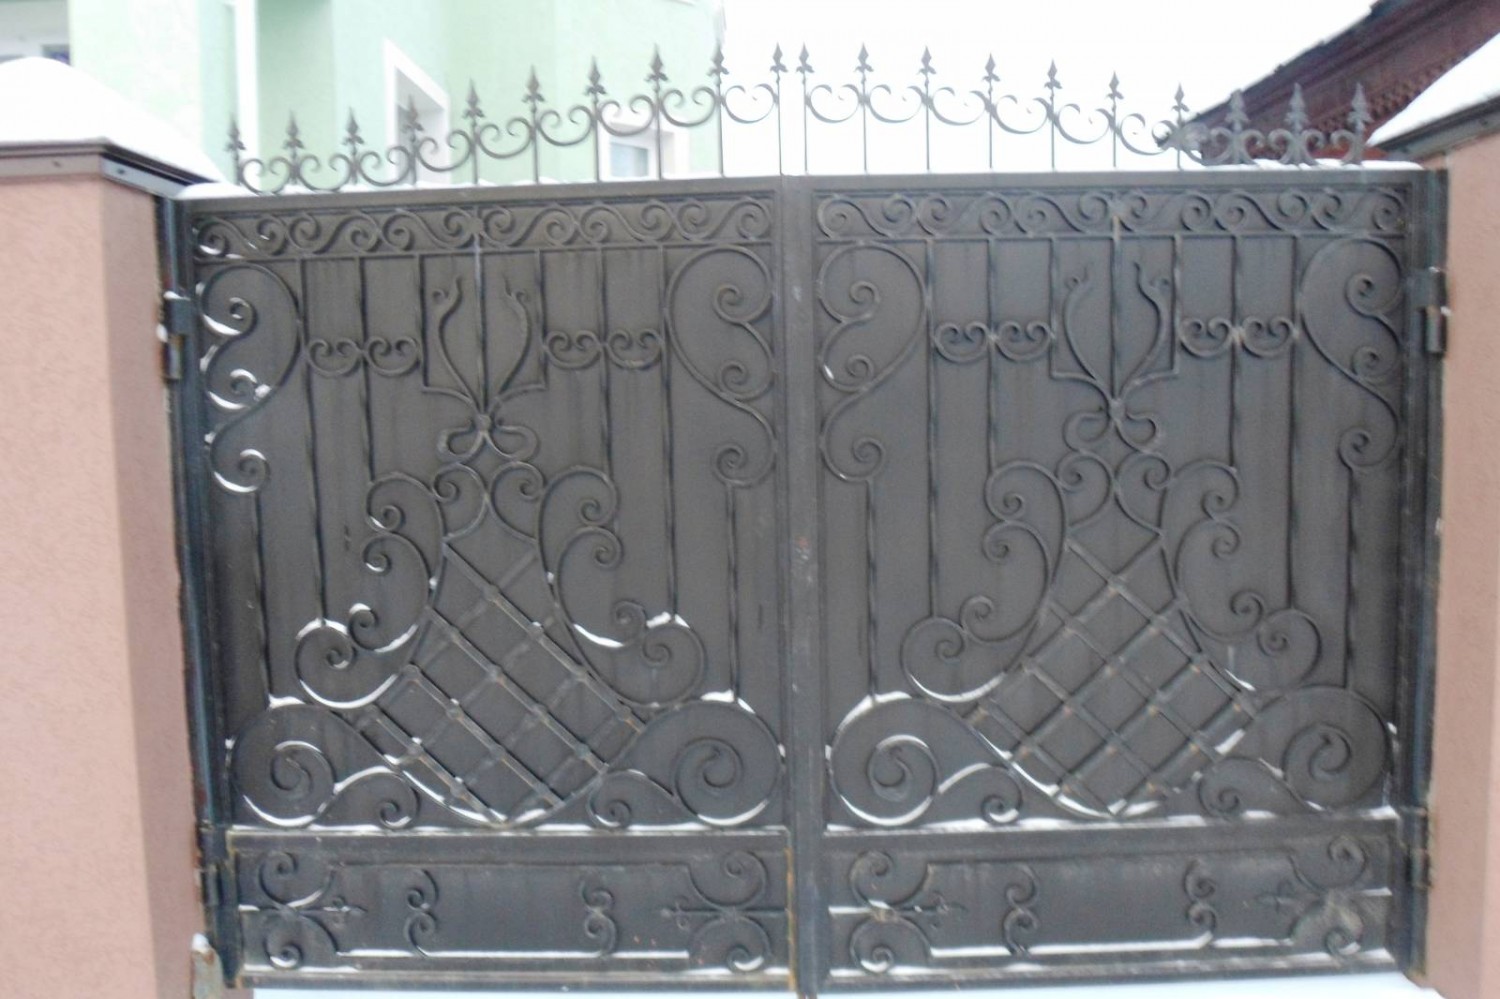 Ворота распашные металлические